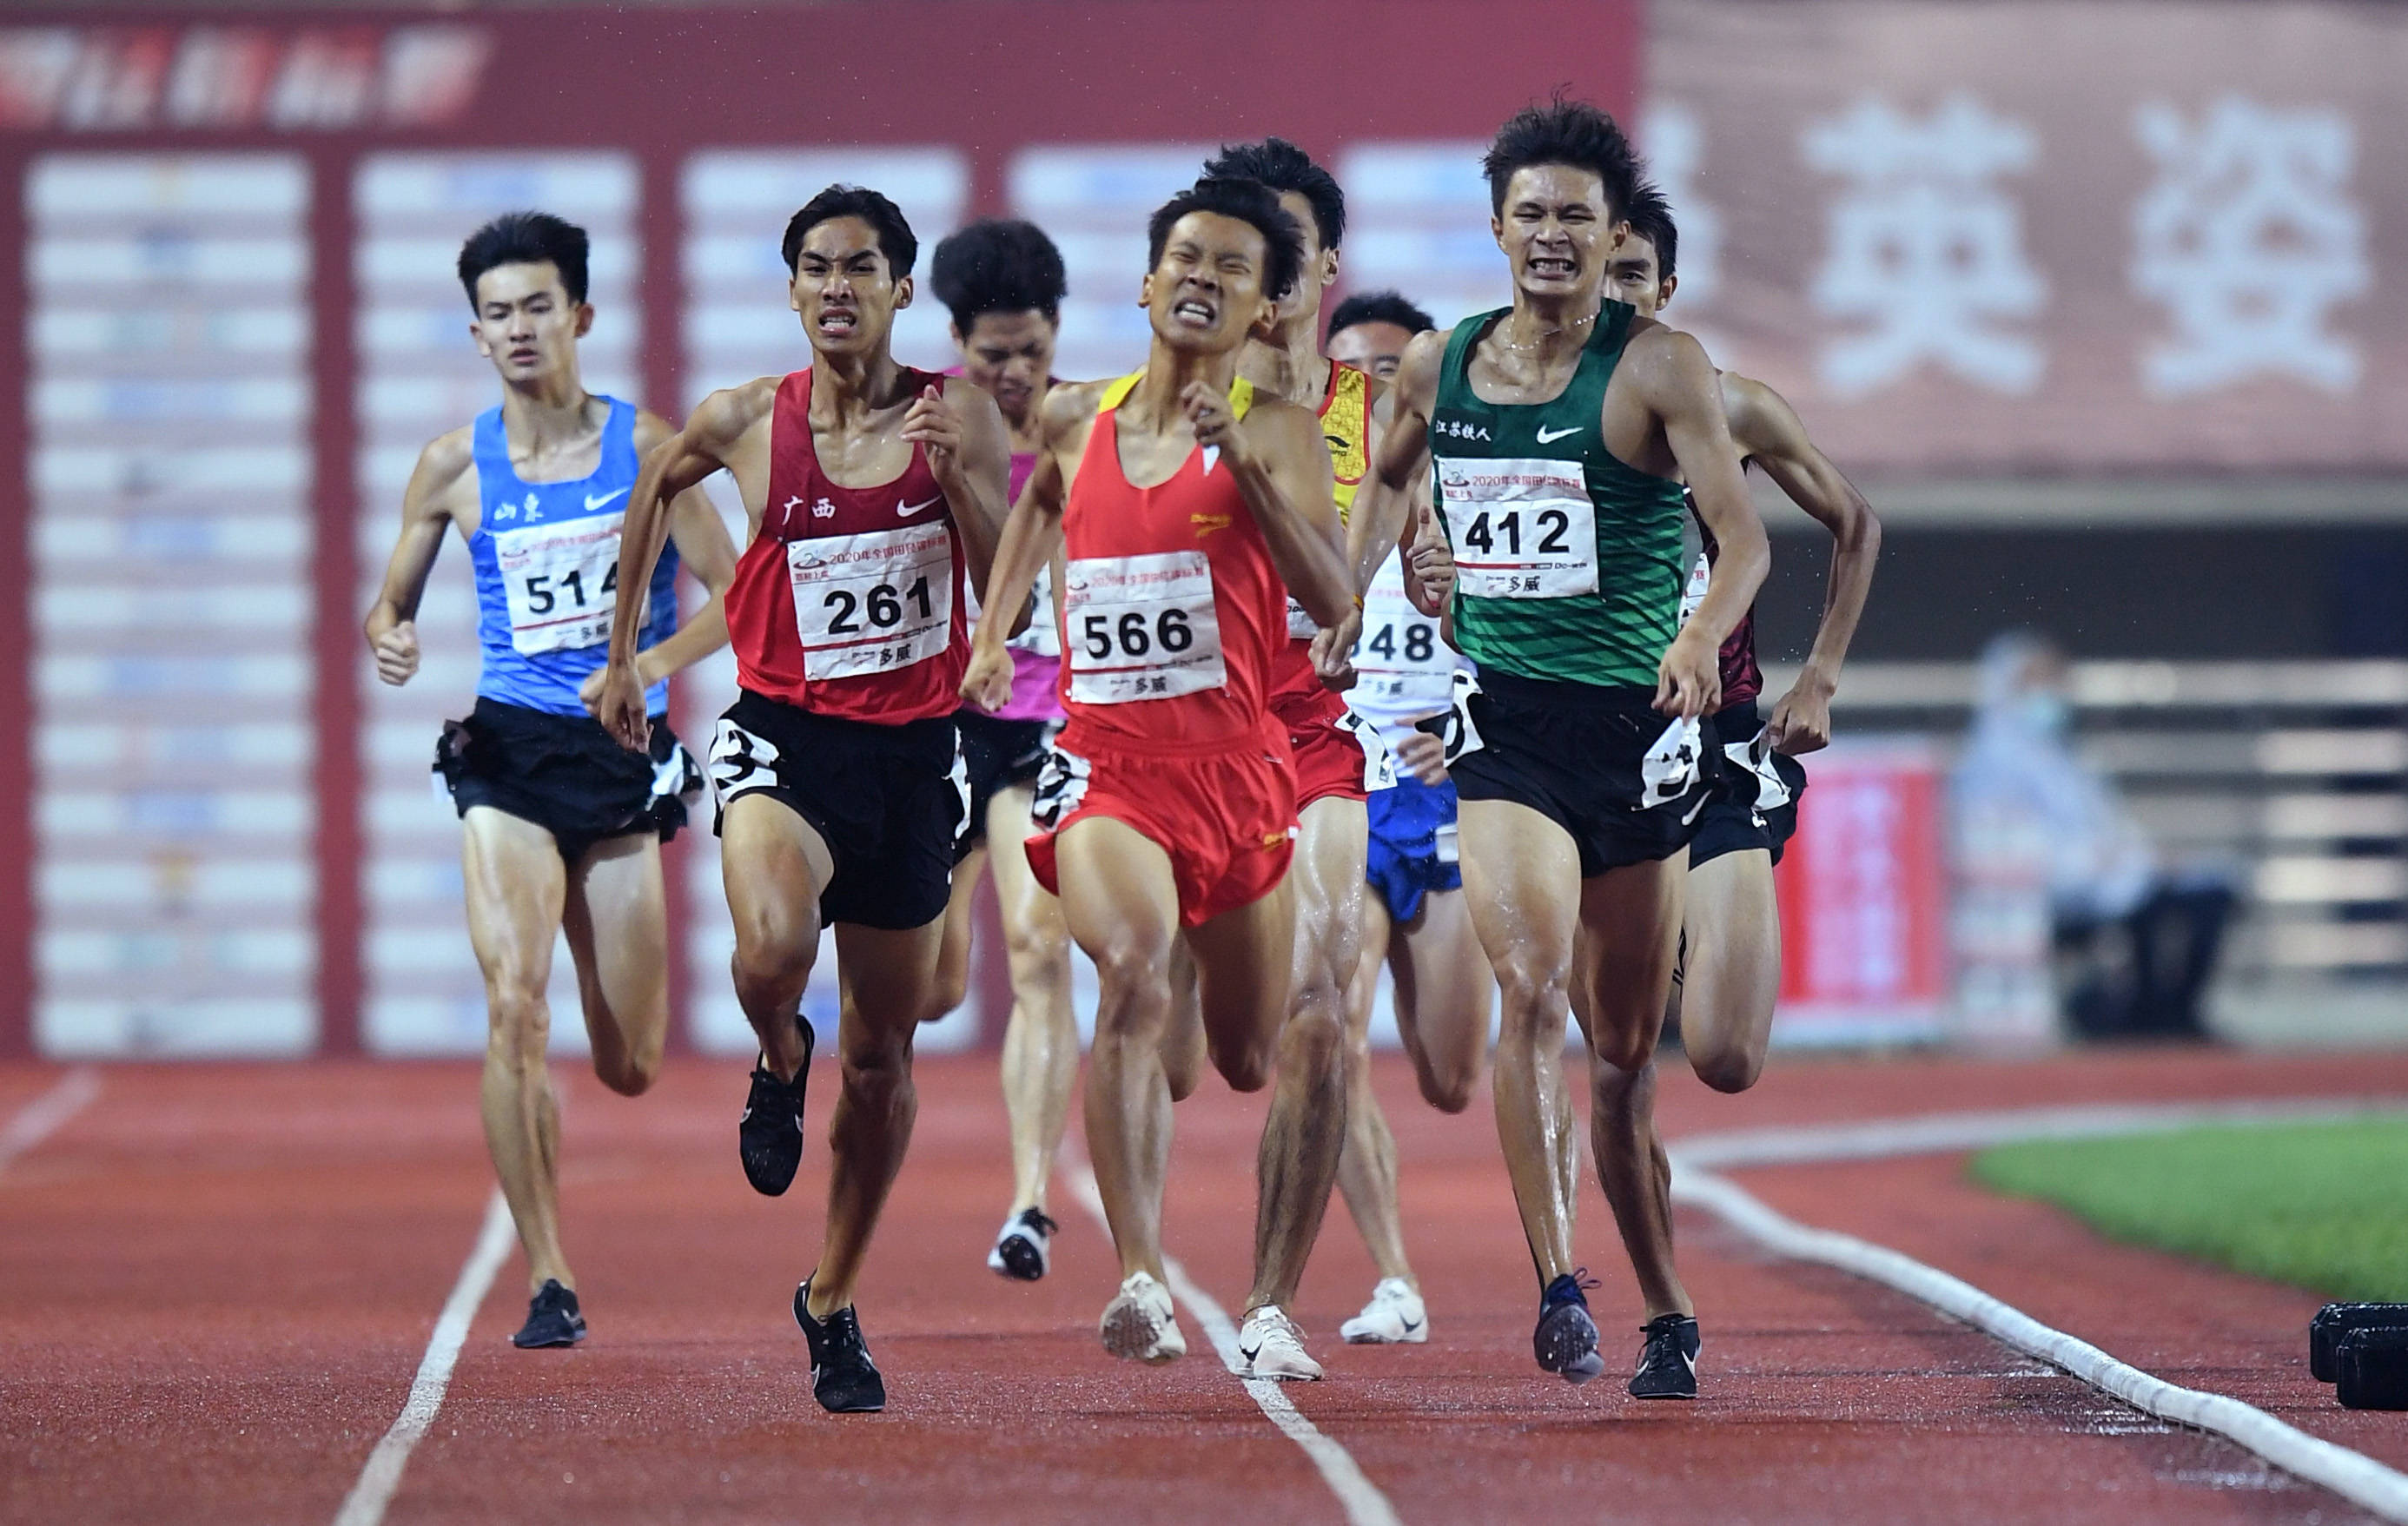 江苏铁人队选手夏辰禹(前右)在男子800米决赛中,最终他以1分51秒75的